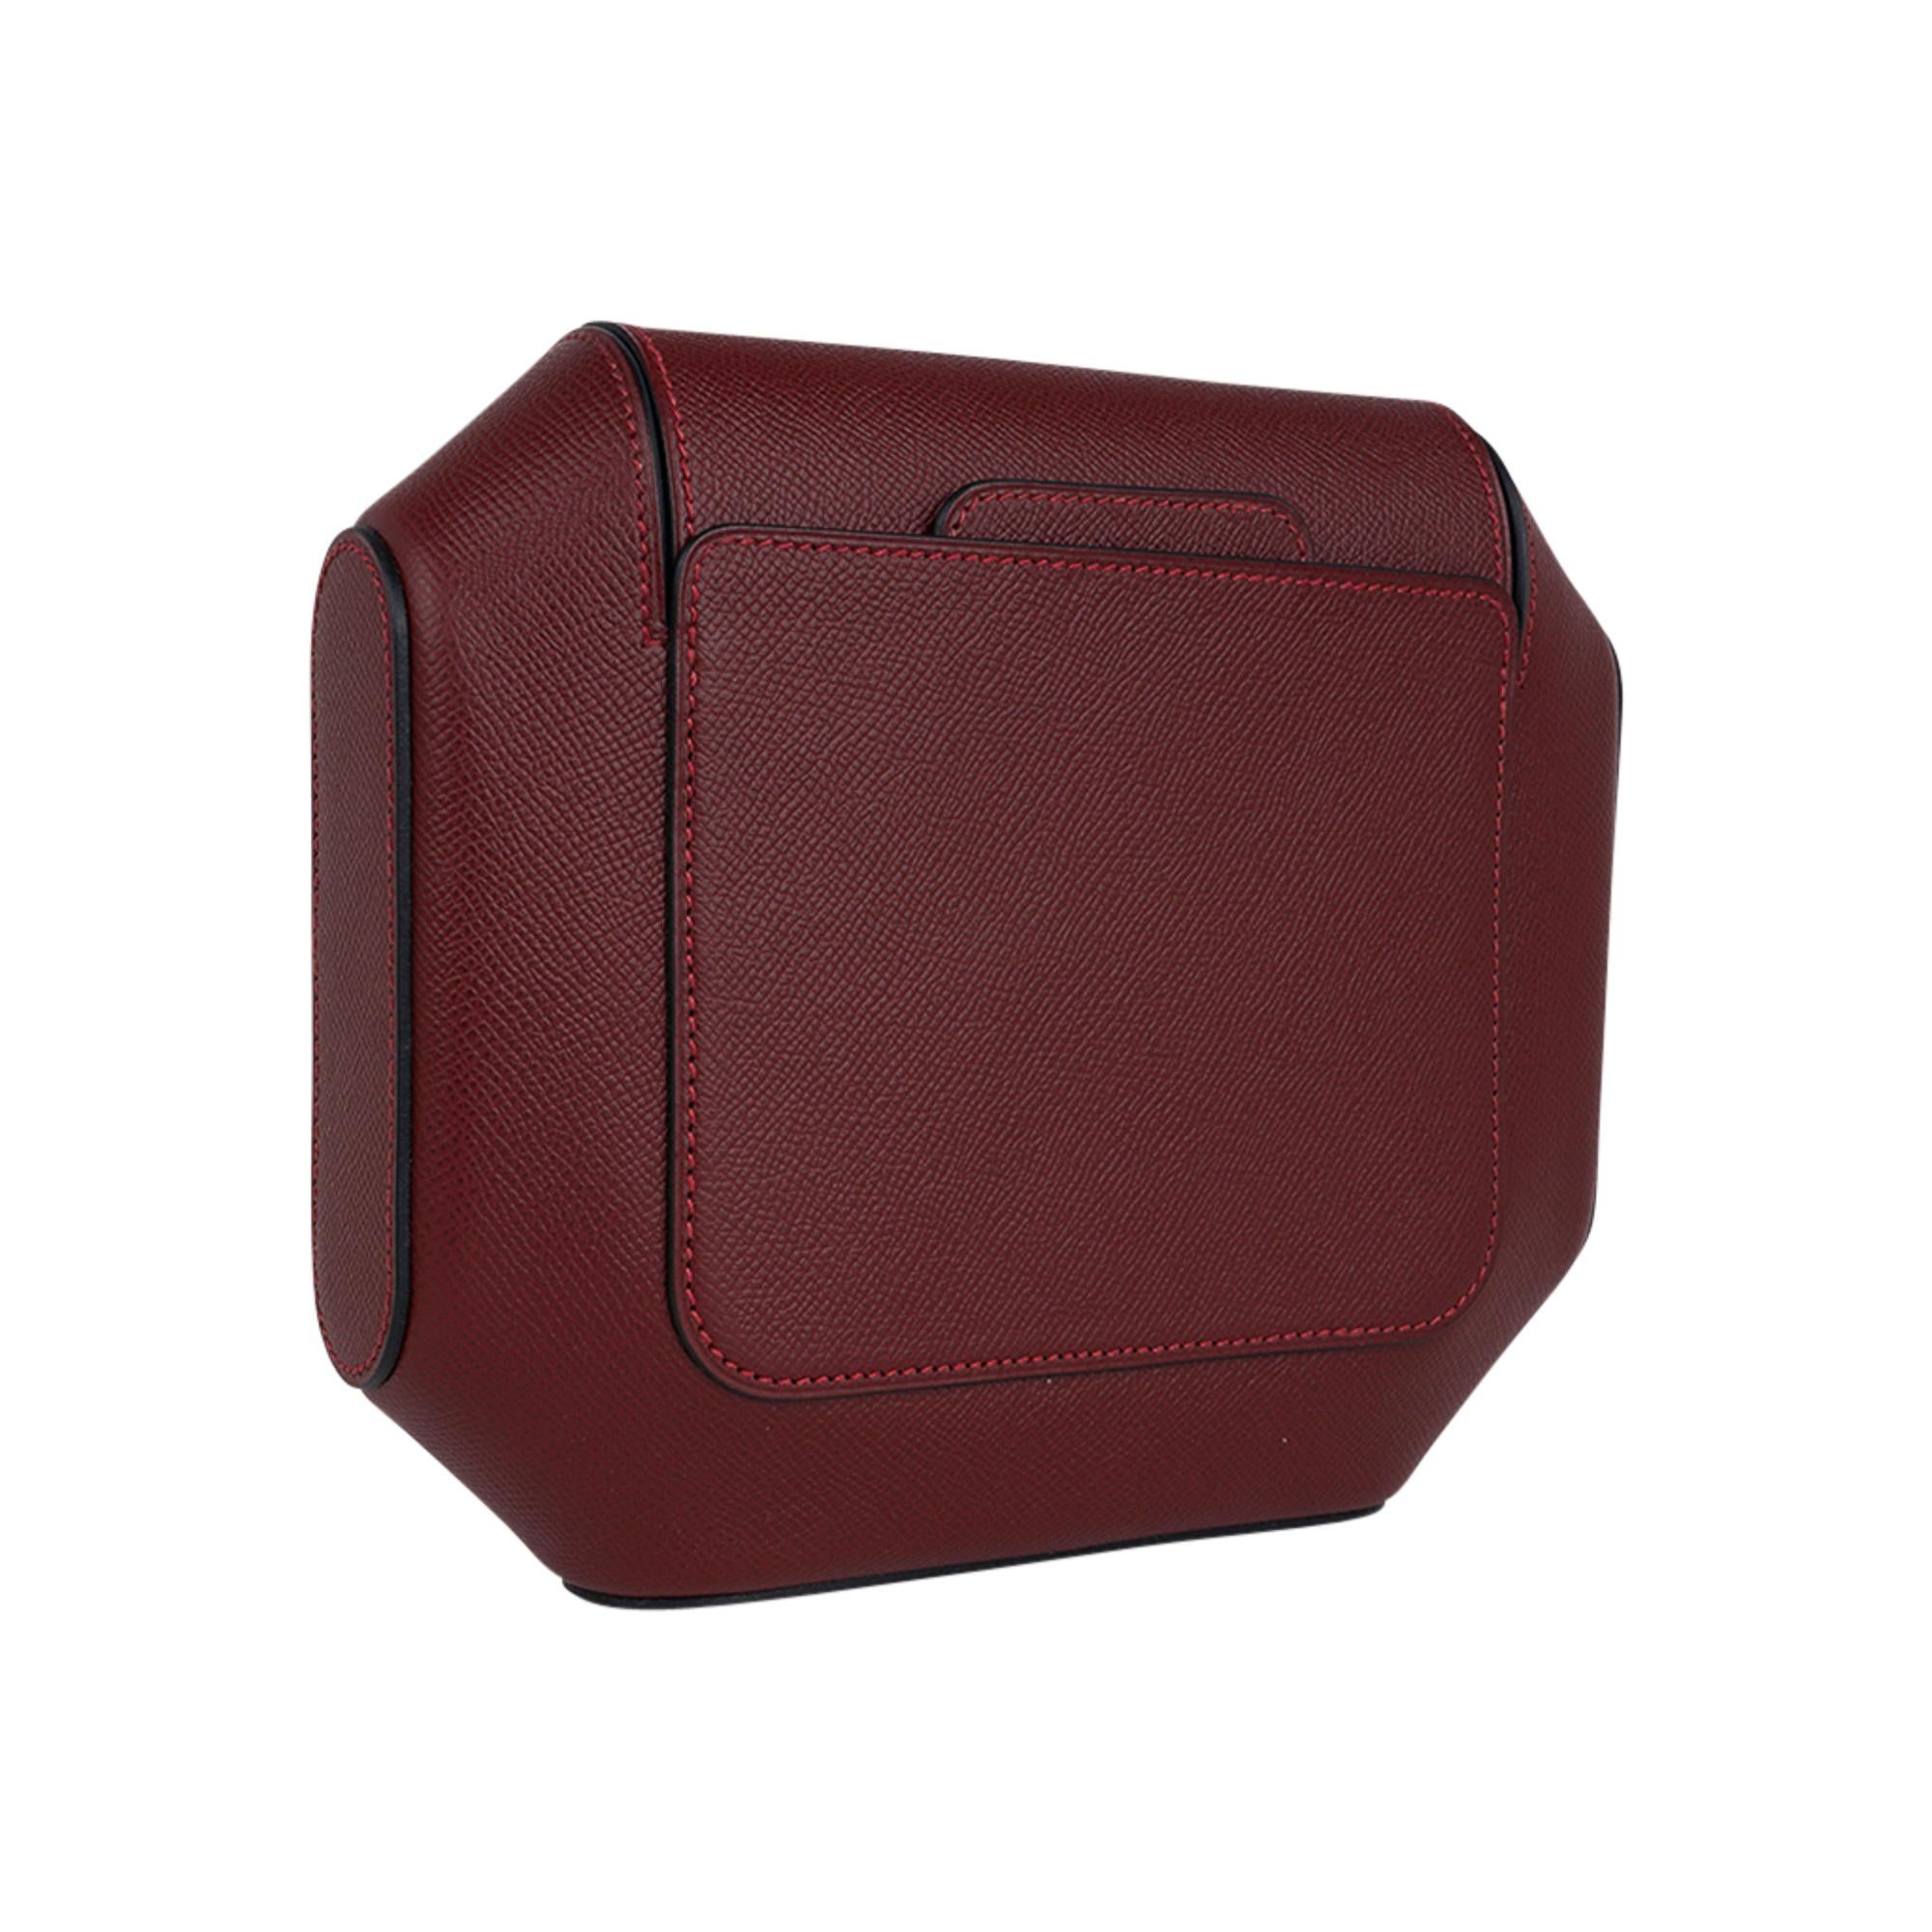 Mightychic bietet eine garantiert authentische limitierte Auflage der Hermes Octogone Pochette Clutch Bag in der Farbe Rouge H.
